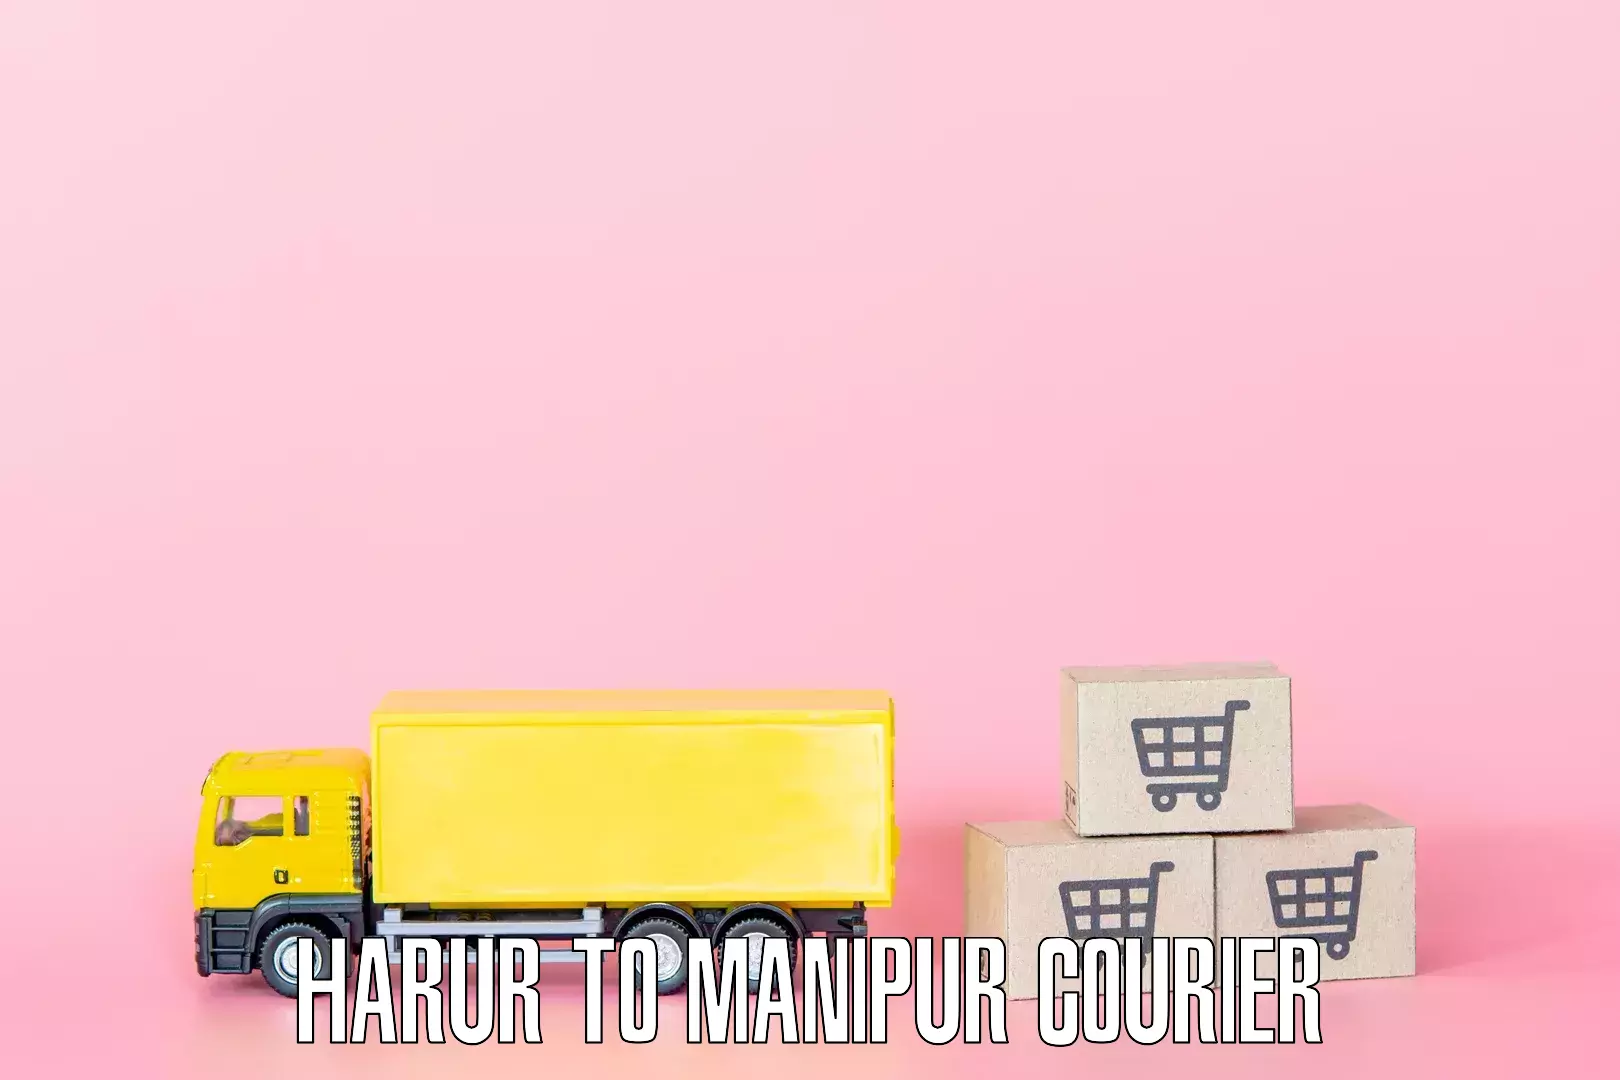 Nationwide furniture transport Harur to Kakching